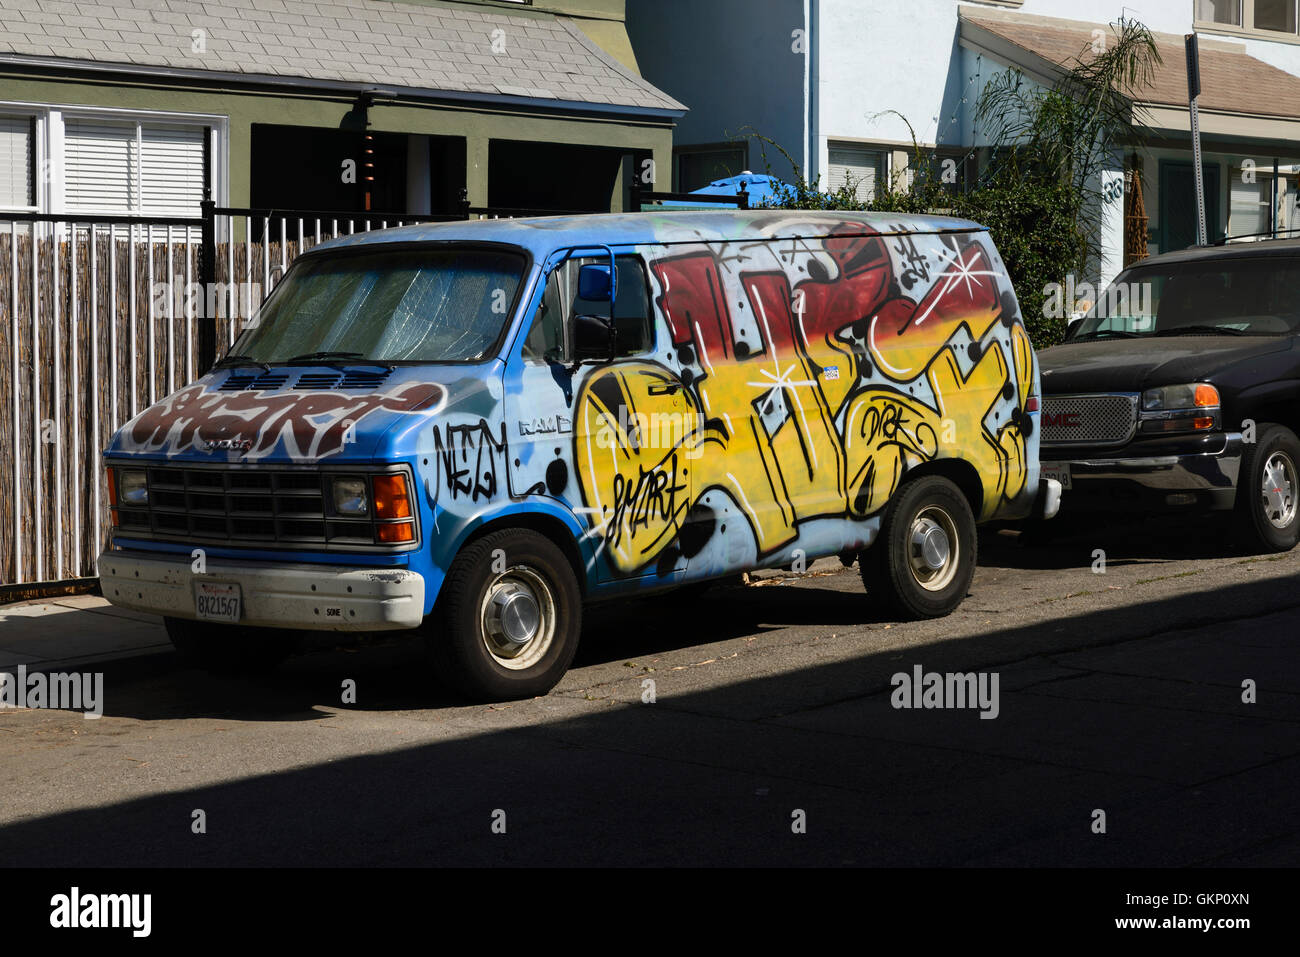 Bil, graffiti väg, hus, vägkant, sol, semestre, gammal, klassiker, van, Los Angeles, Venice Beach, Californien, auto, graffiti, Foto Stock